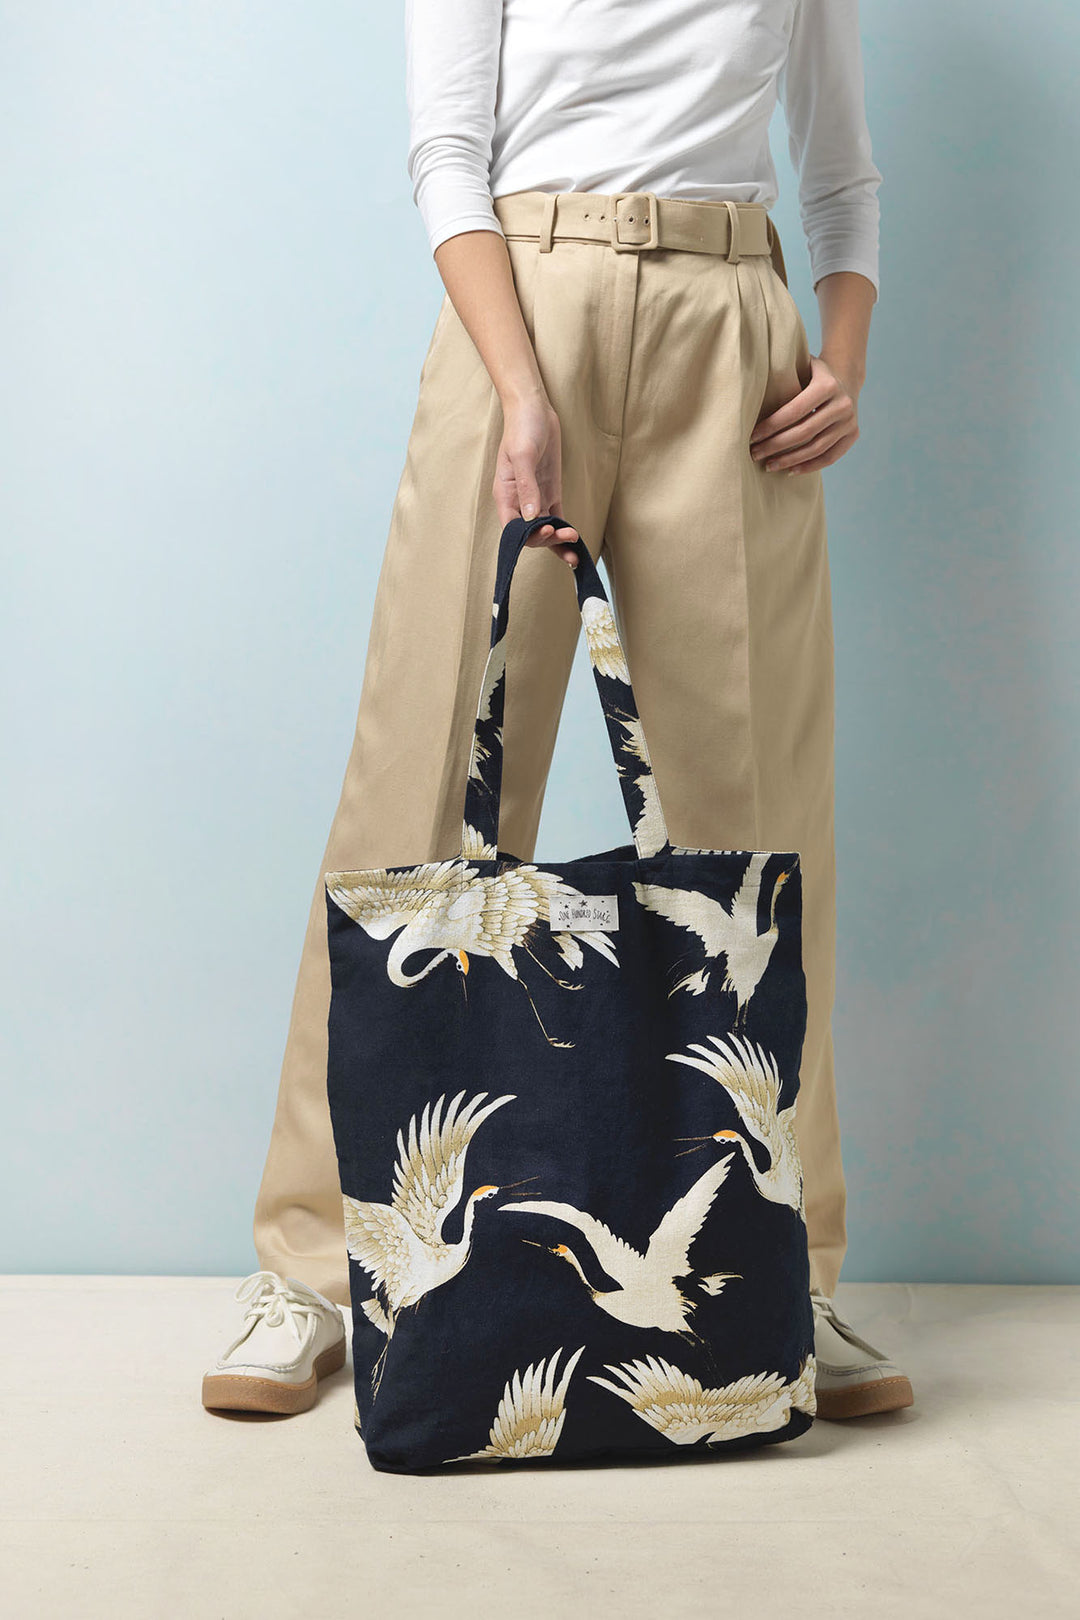 Stork Black Canvas Bag